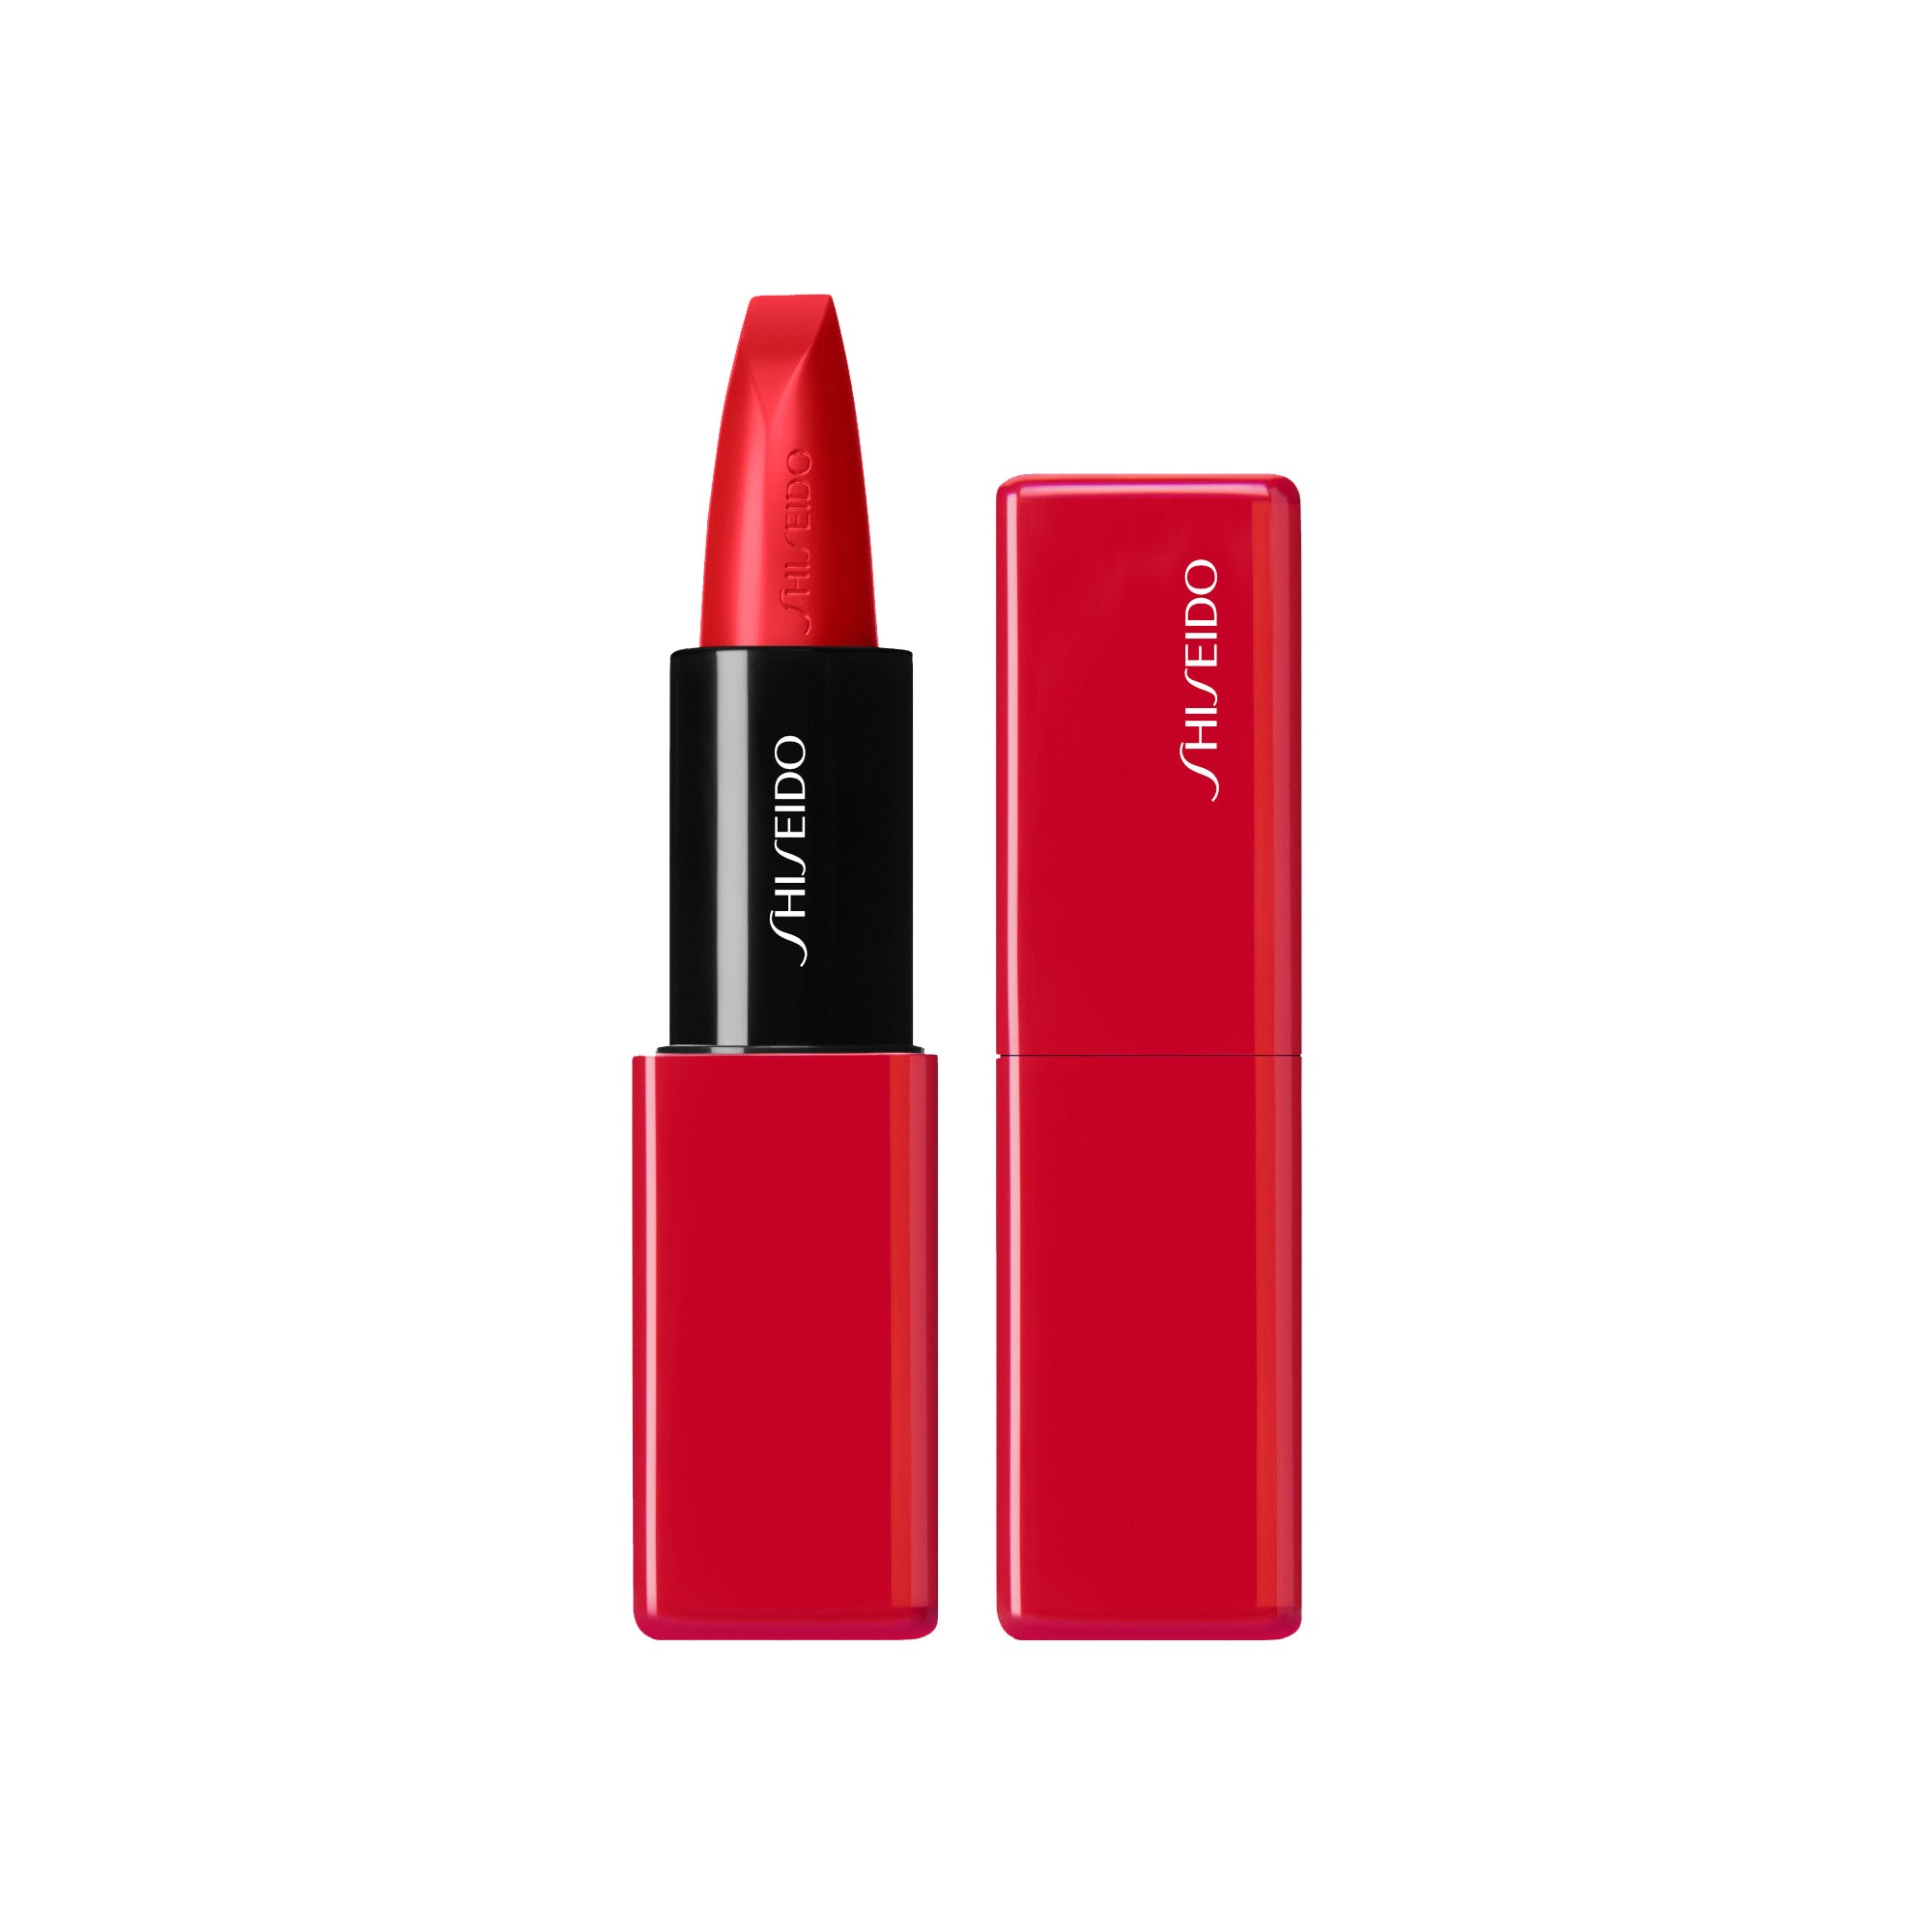 Shiseido TechnoSatin Long Lasting & Hydrating Gel Lipstick short circuit